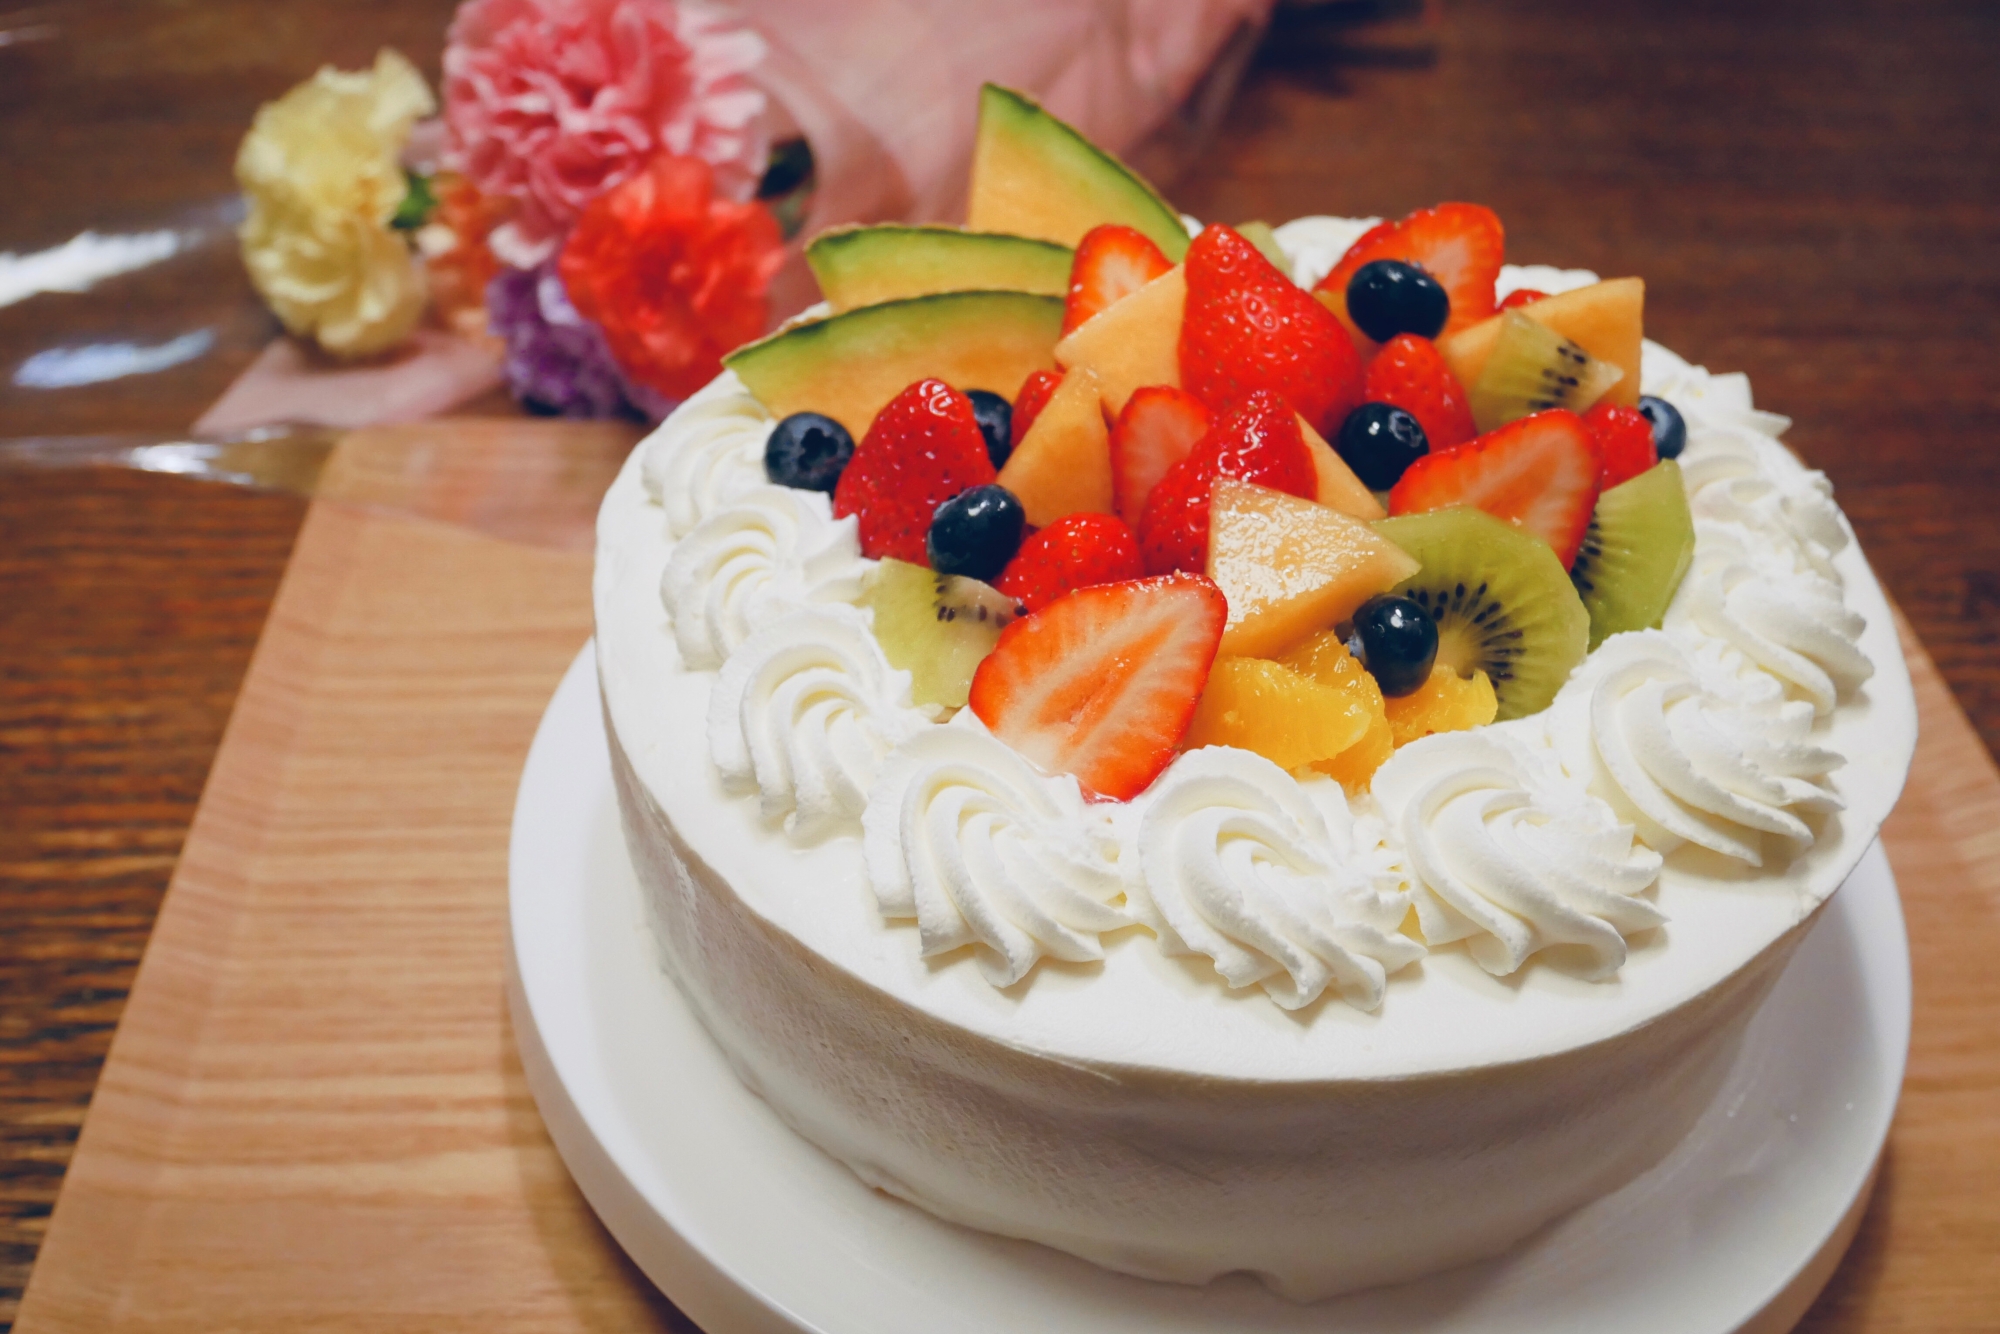 メイルオーダー 誕生日ケーキ バースデー フルーツたっぷり 4号 生クリームのデコレーションケーキ ショート